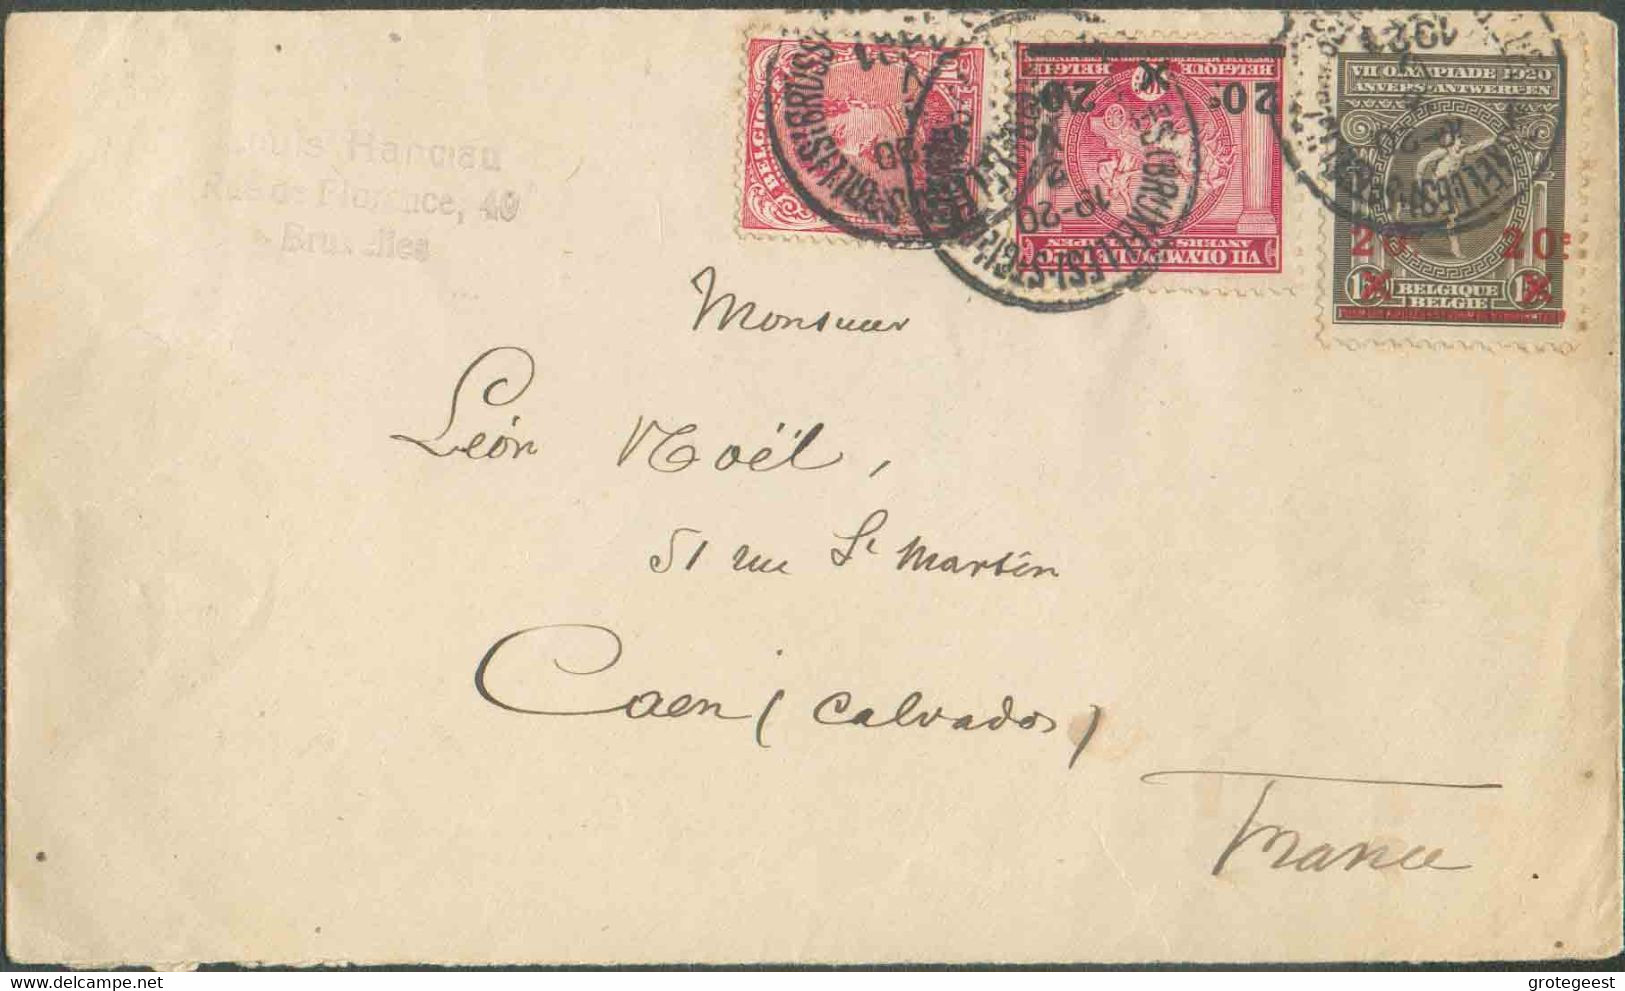 BELGIUM N°138-185/6 - Affr. Combiné à 50 Centimes Obl. Sc St-GILLES (BRUXELLES) s/L. Du 2-V-1921 Vers Caen. - TB - 17309 - Estate 1920: Anversa